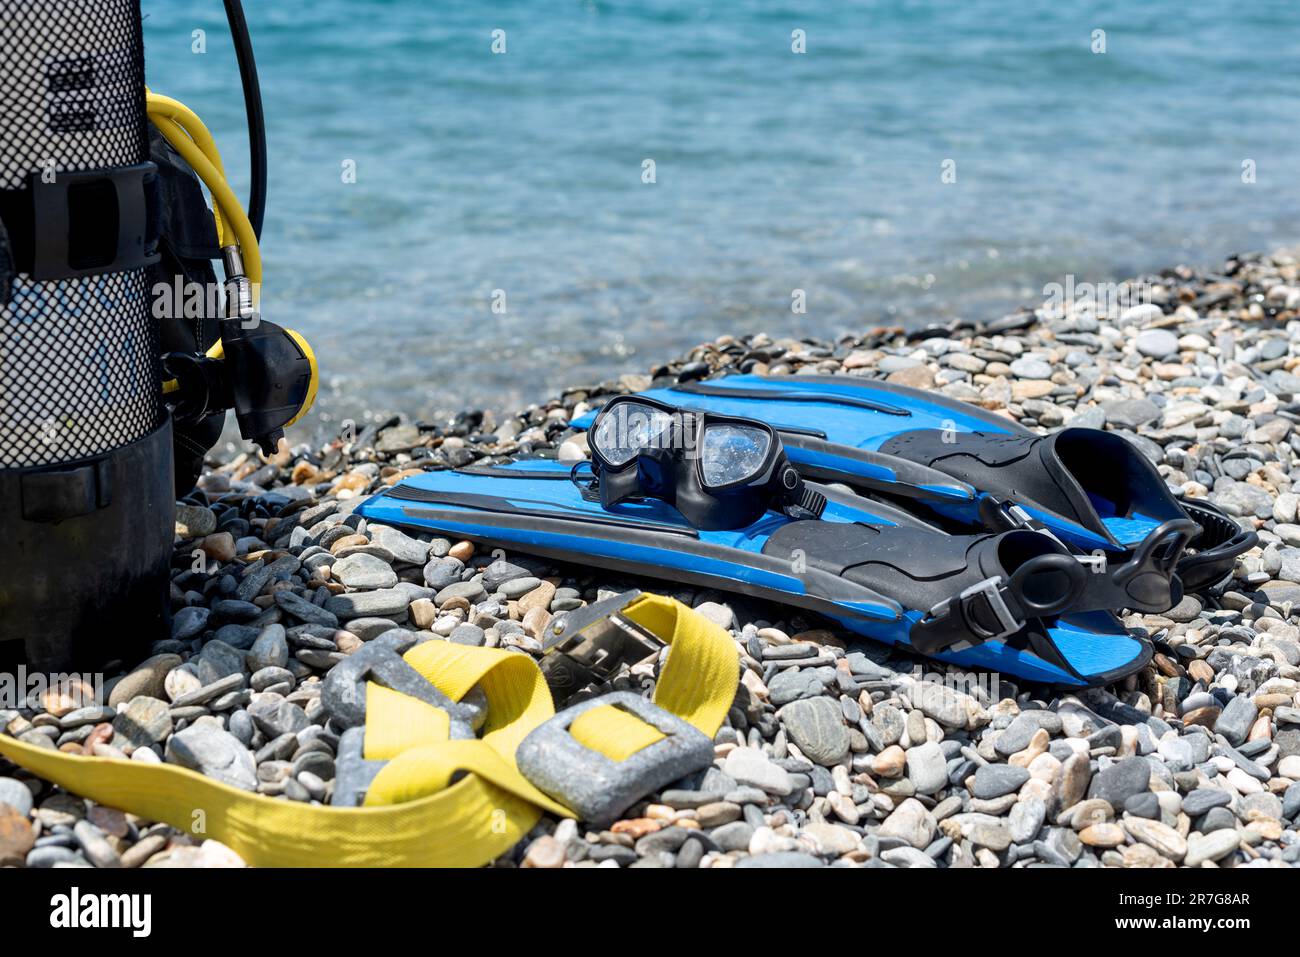 Équipement de plongée, y compris réservoir d'oxygène, palmes, lunettes, régulateur et poids sur la rive d'une plage rocheuse. Sports nautiques. Initiation à la plongée sous-marine Banque D'Images